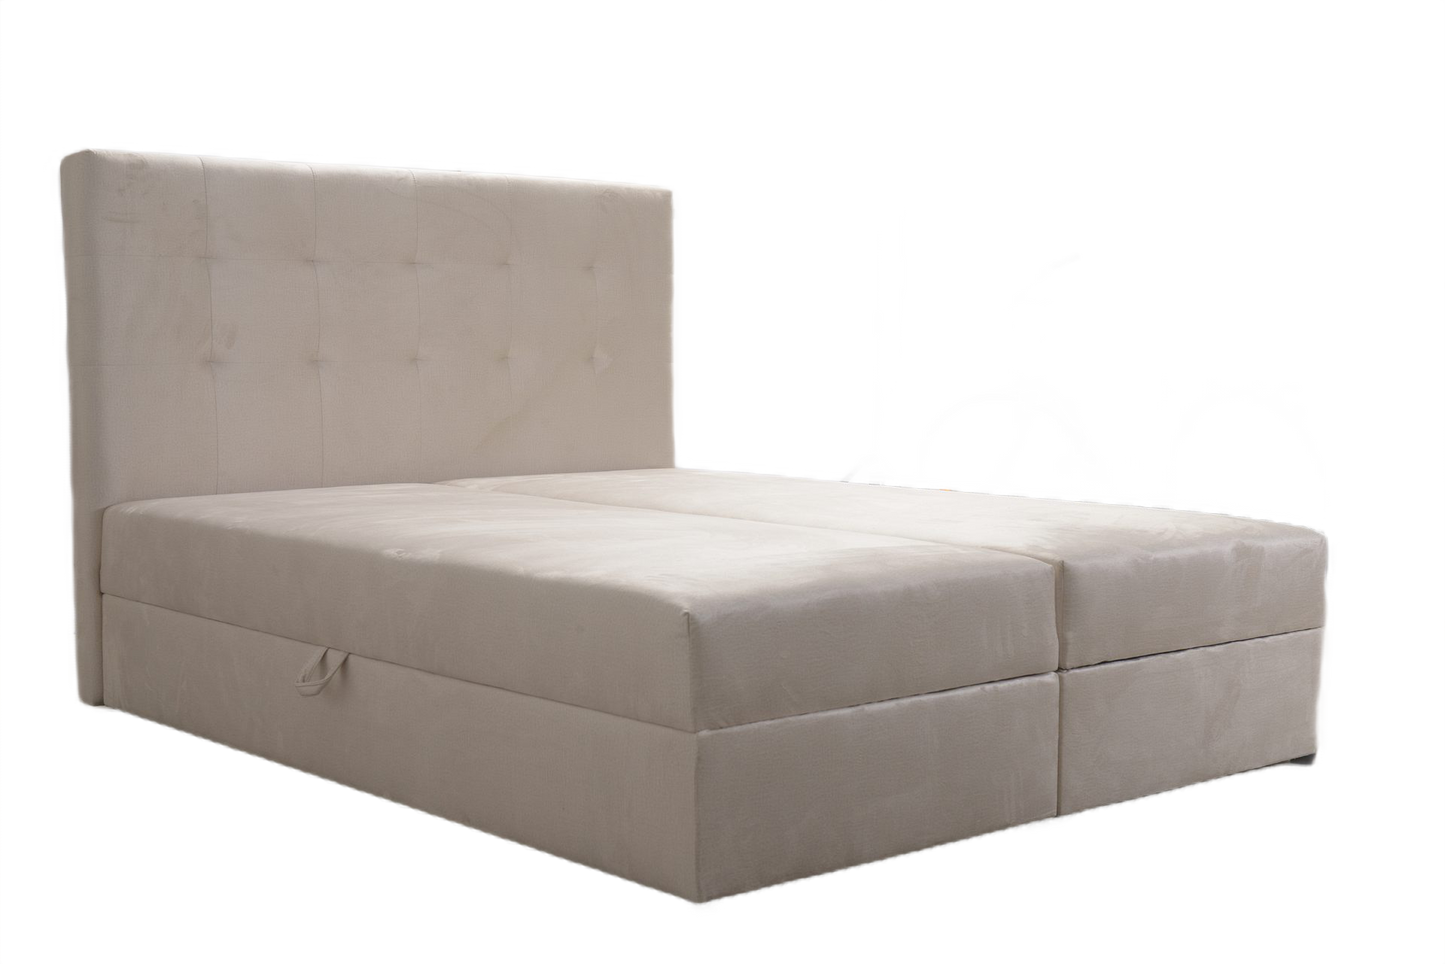 Tanie podwójne łóżko kontynentalne z zagłówkiem 160x200